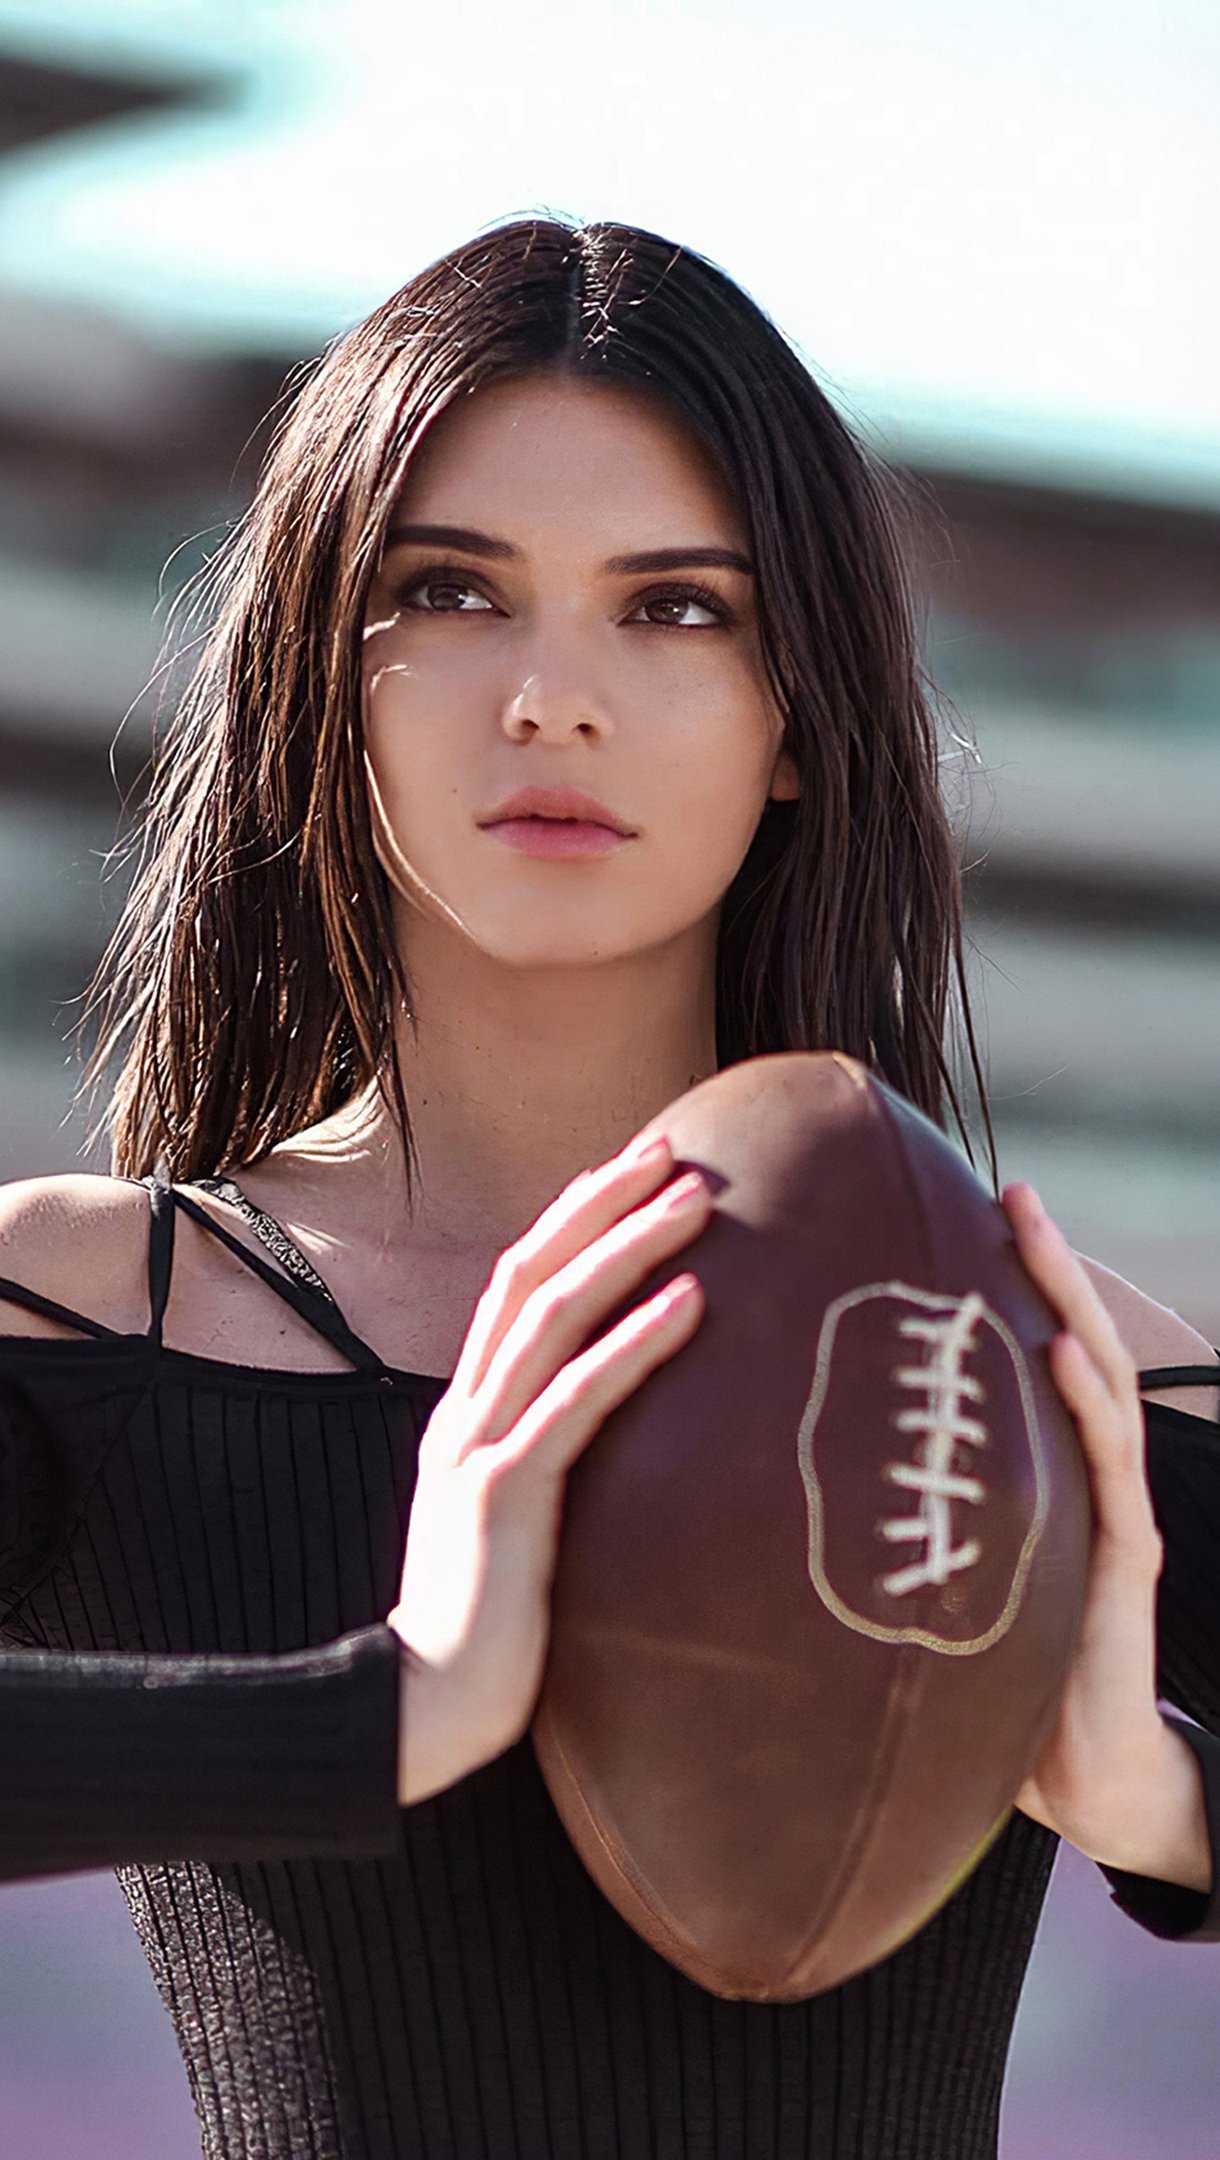 Fondos de pantalla Kendall Jenner con balon de futbol americano Vertical